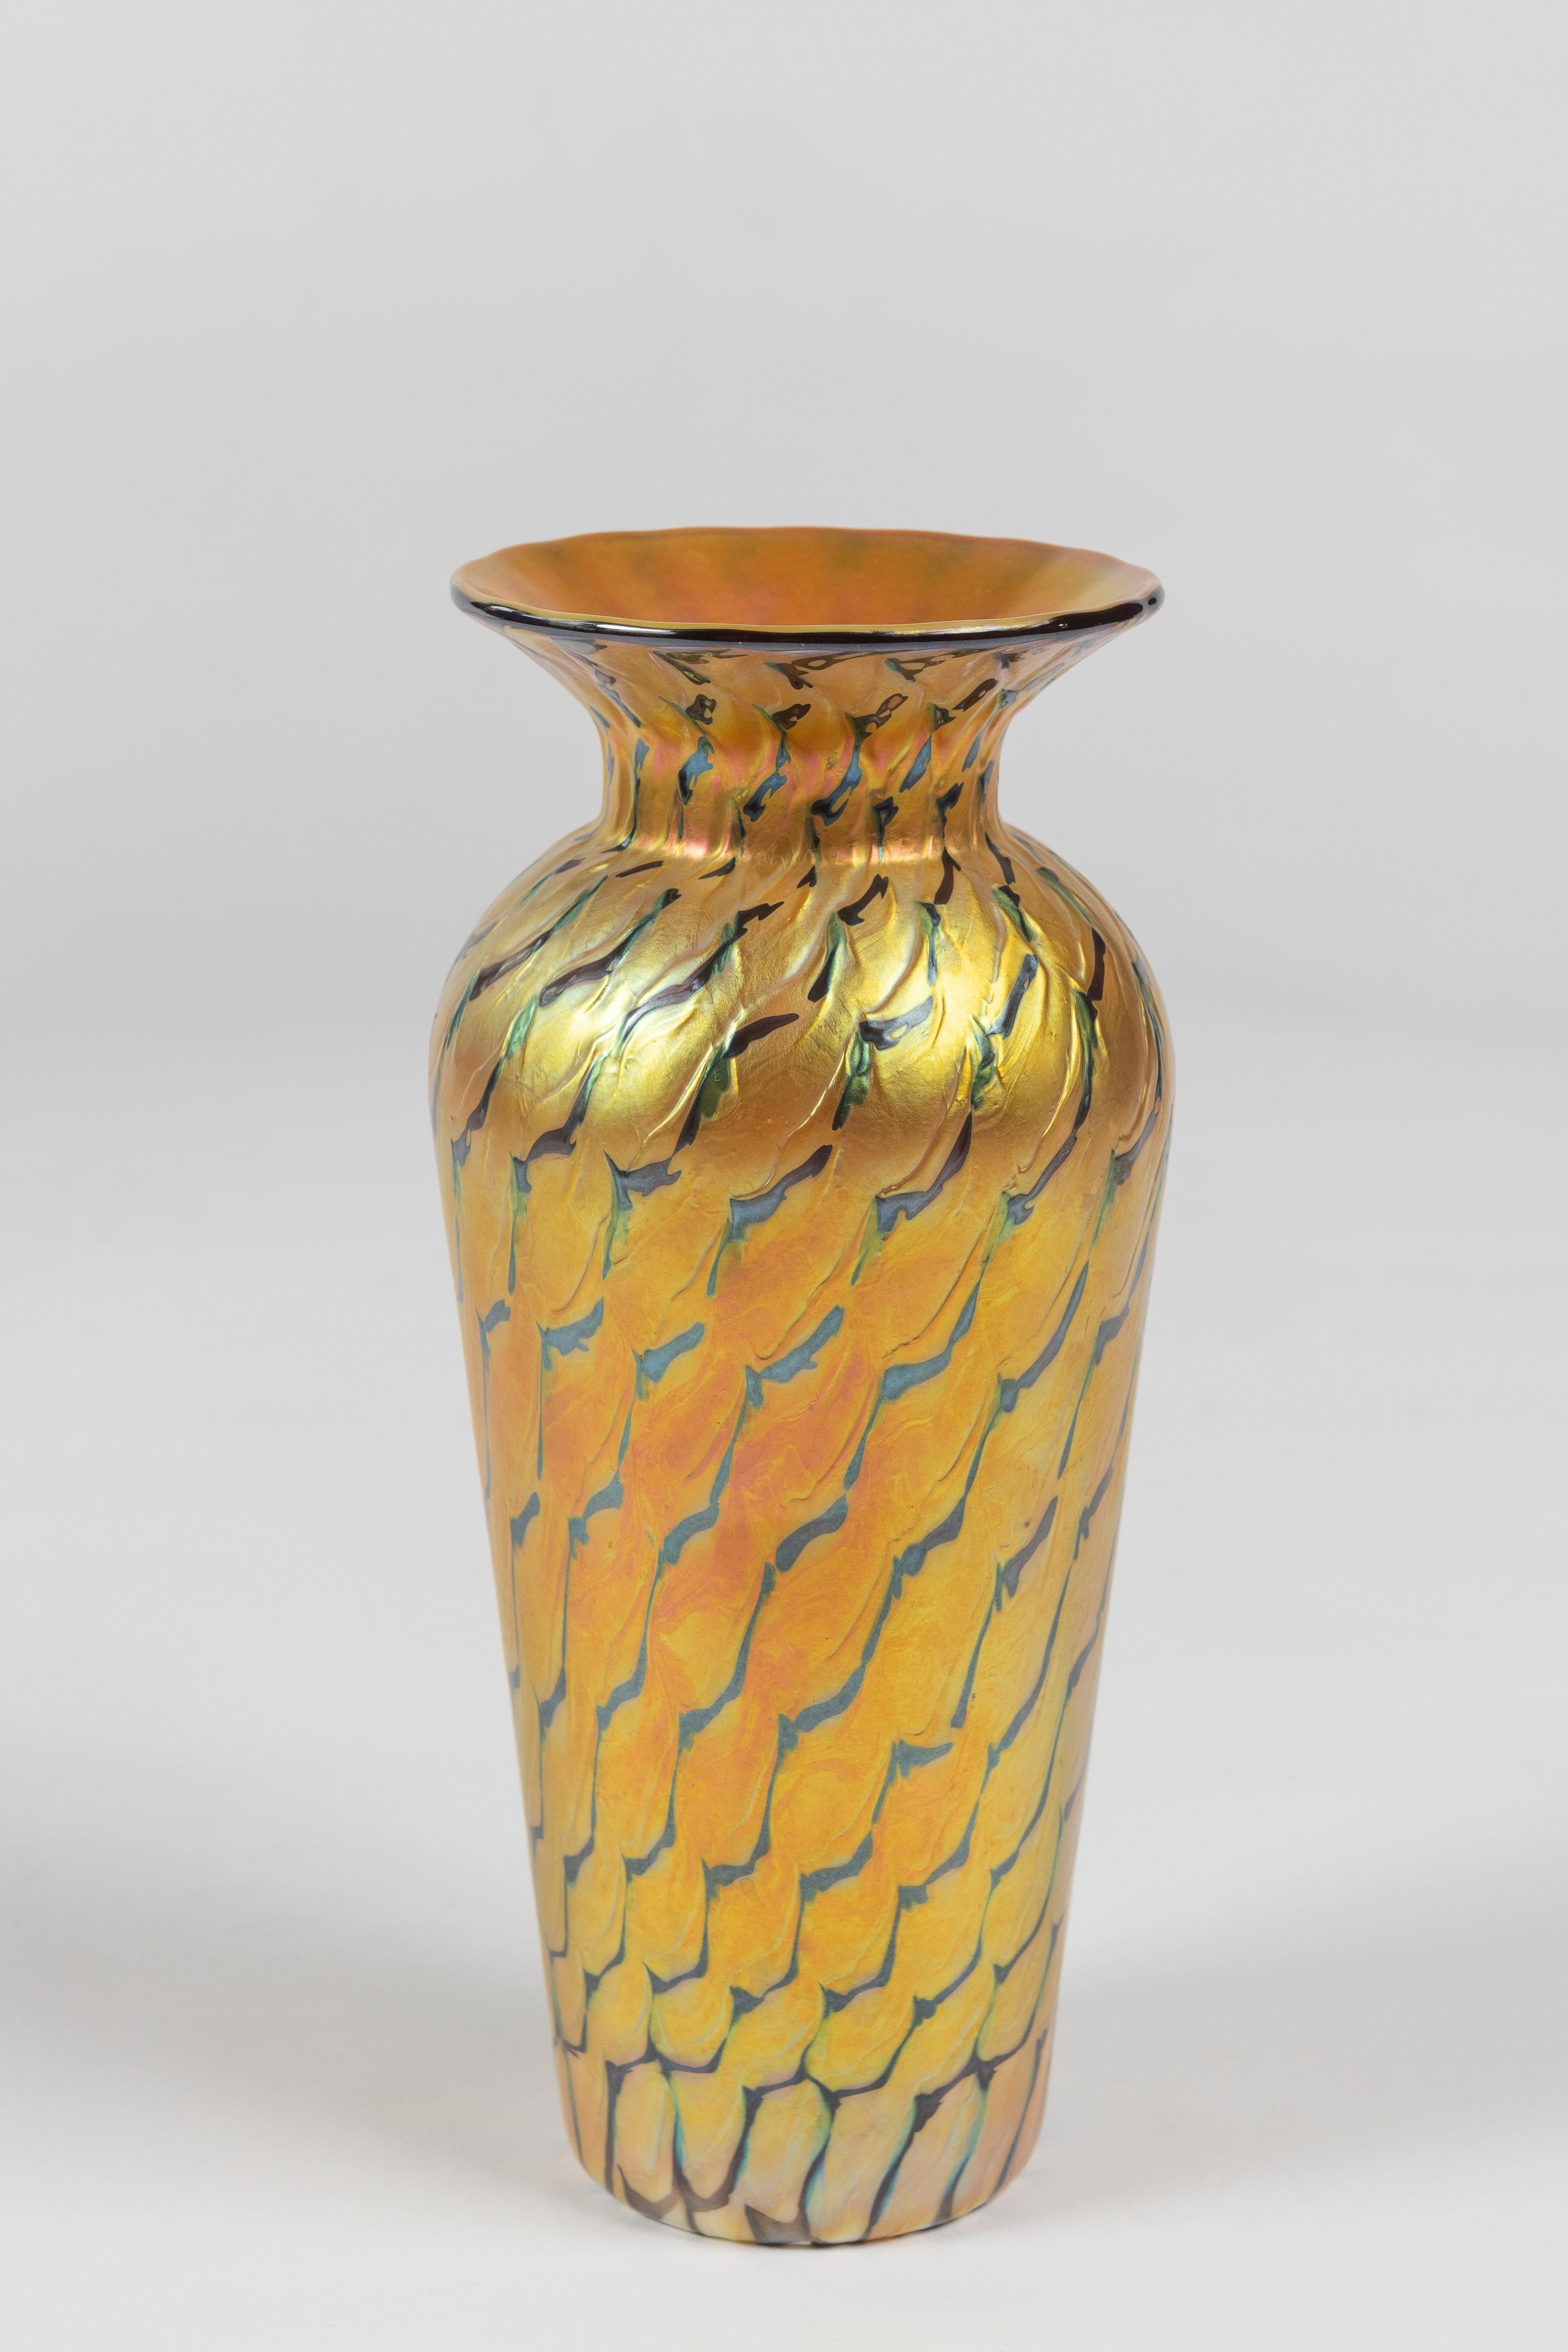 Ce vase en verre d'art irisé or et vert, d'une grande élégance, est fabriqué par les studios Lundberg de Californie et signé. Très bon état.